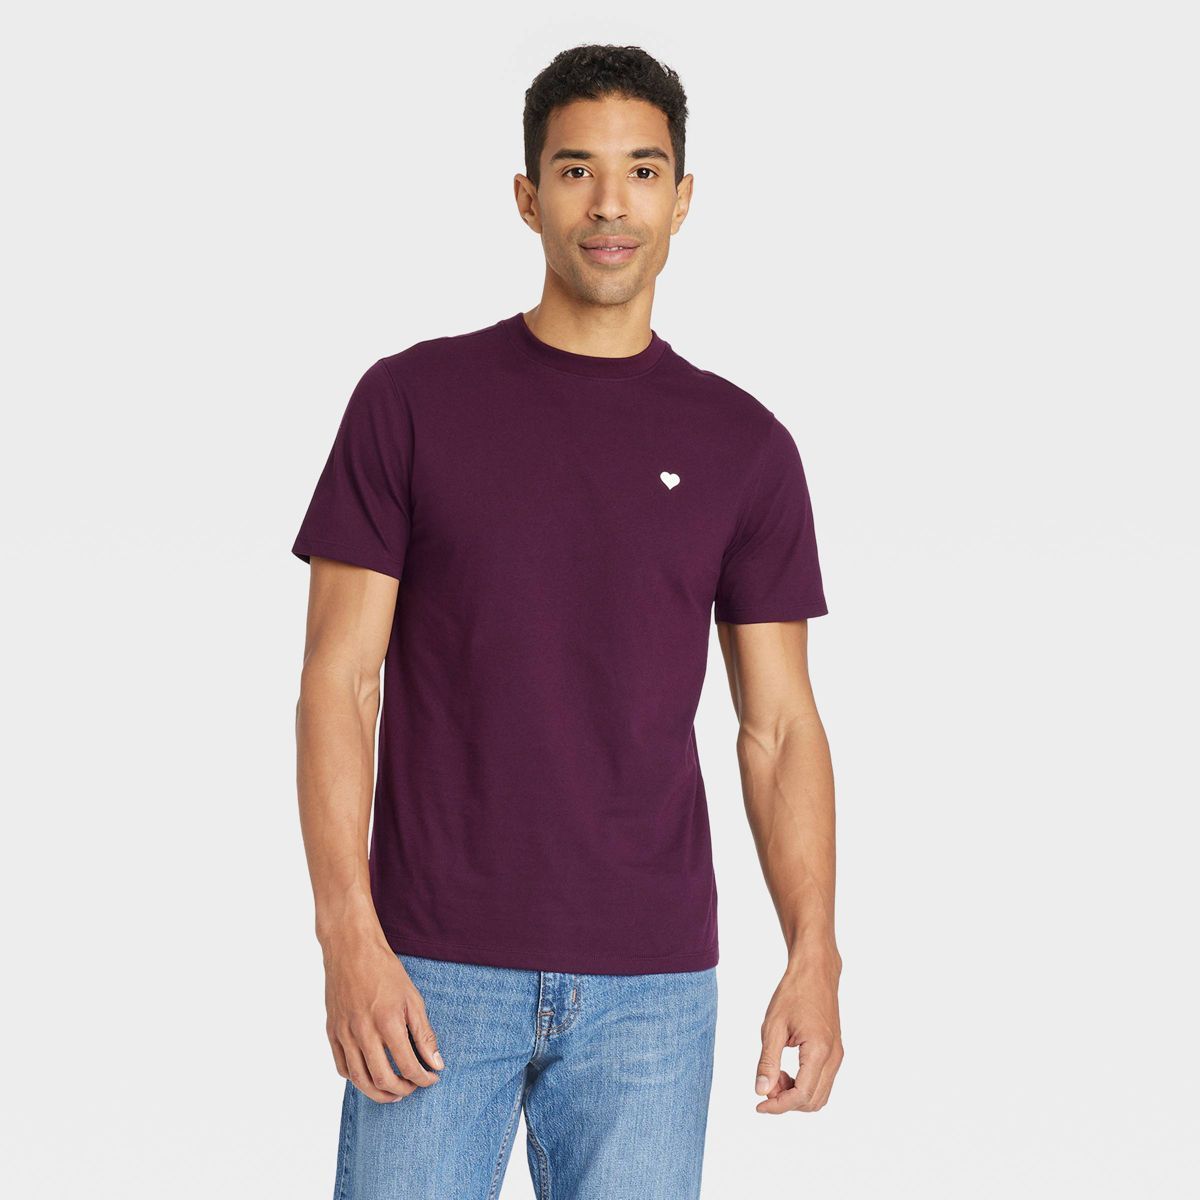 Men's Short Sleeve Crewneck T-Shirt - Goodfellow & Co™ Burgundy | Target